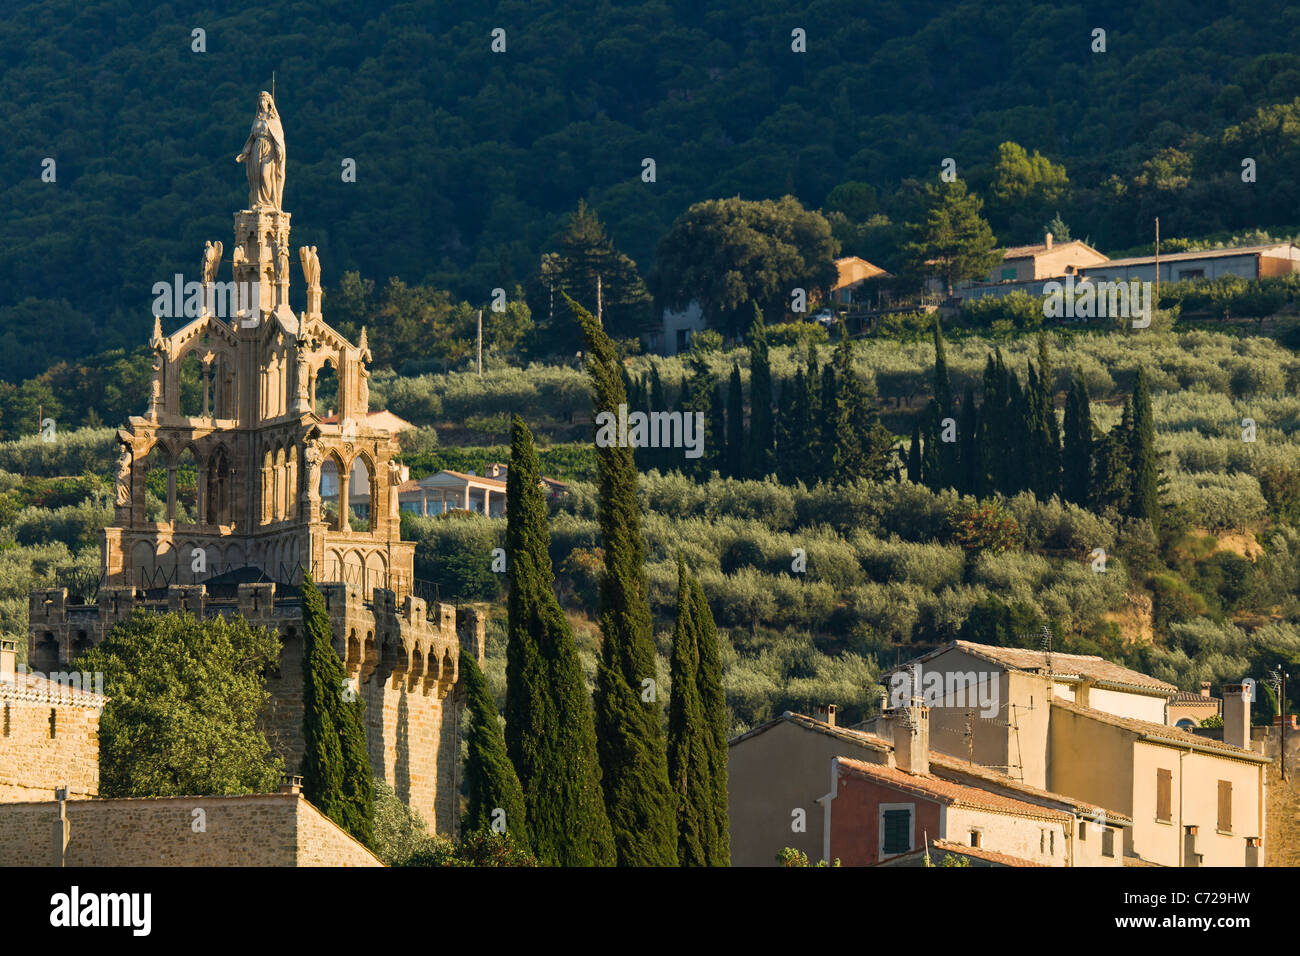 Les toits, la tour Randonne avec une statue géante de la Vierge Marie dans le sud Drôme ville de Nyons en France. Banque D'Images